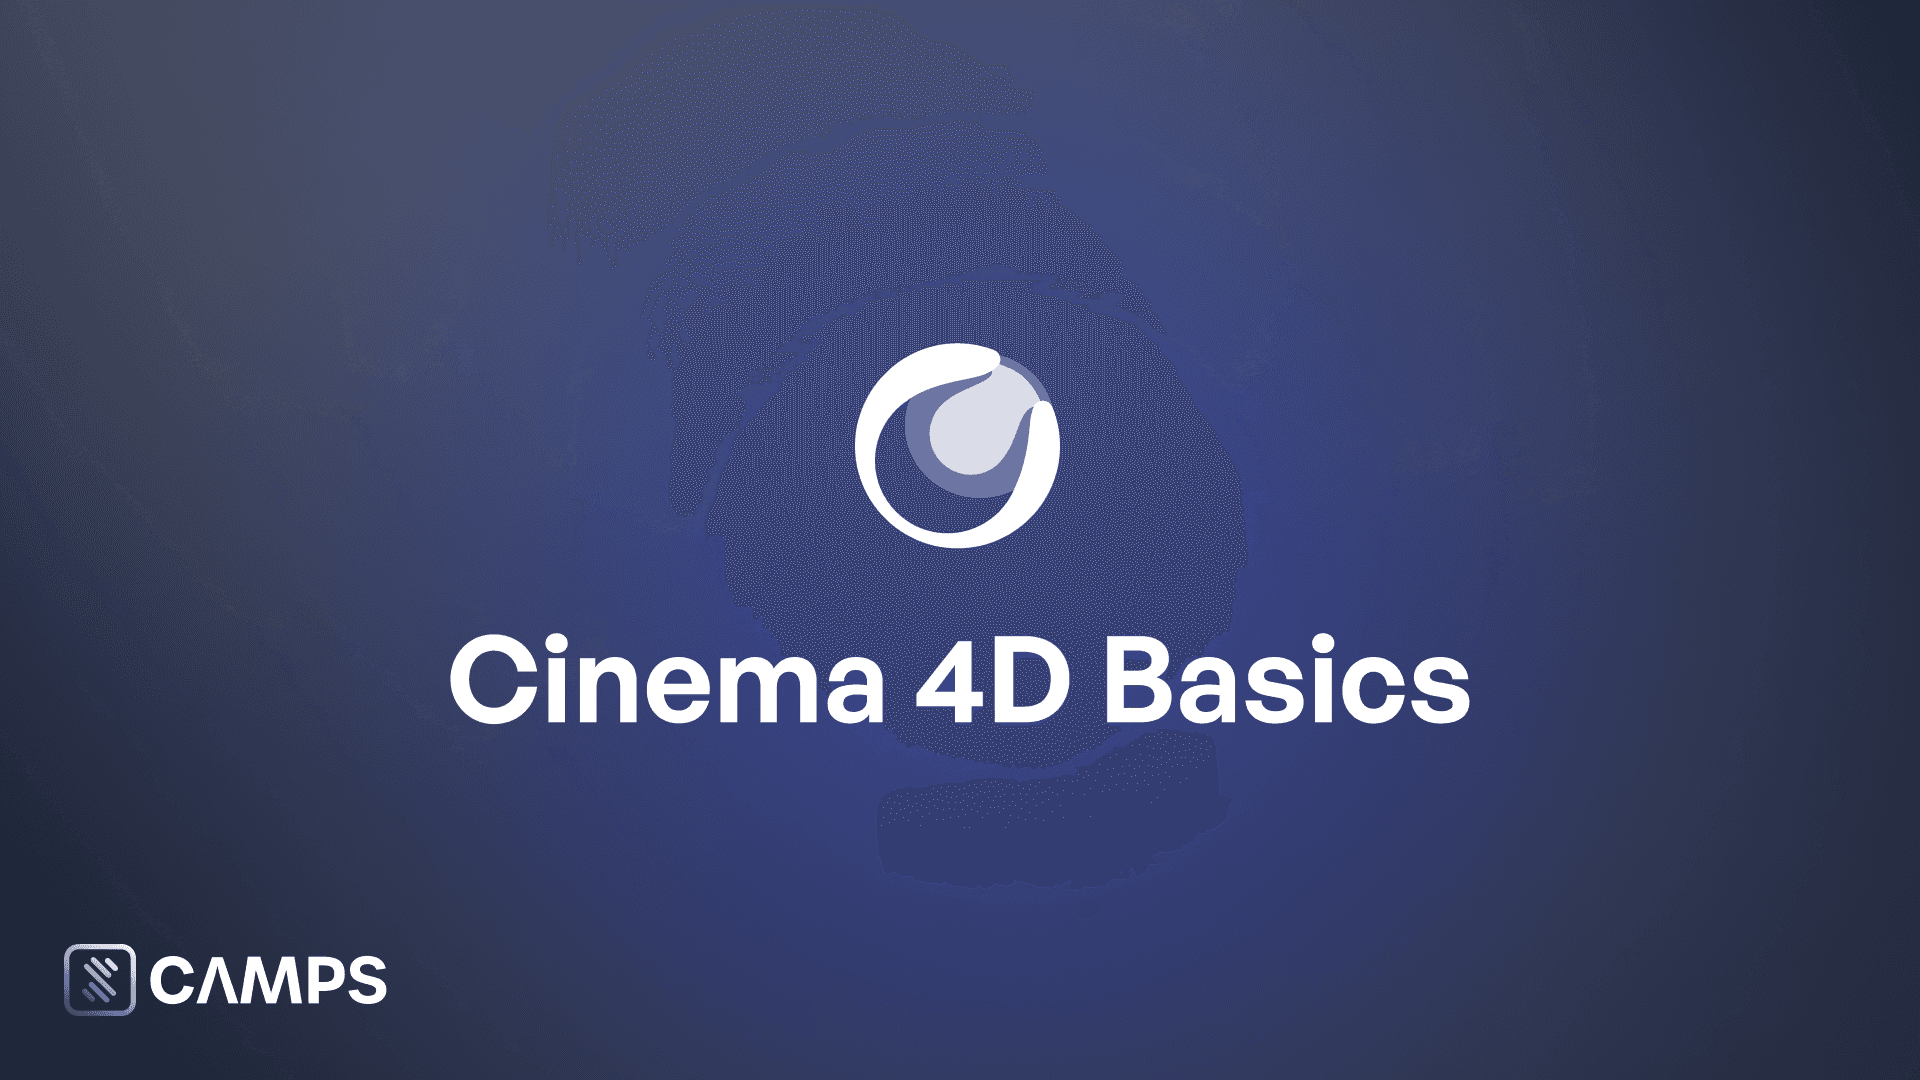 Cinema 4D Basics